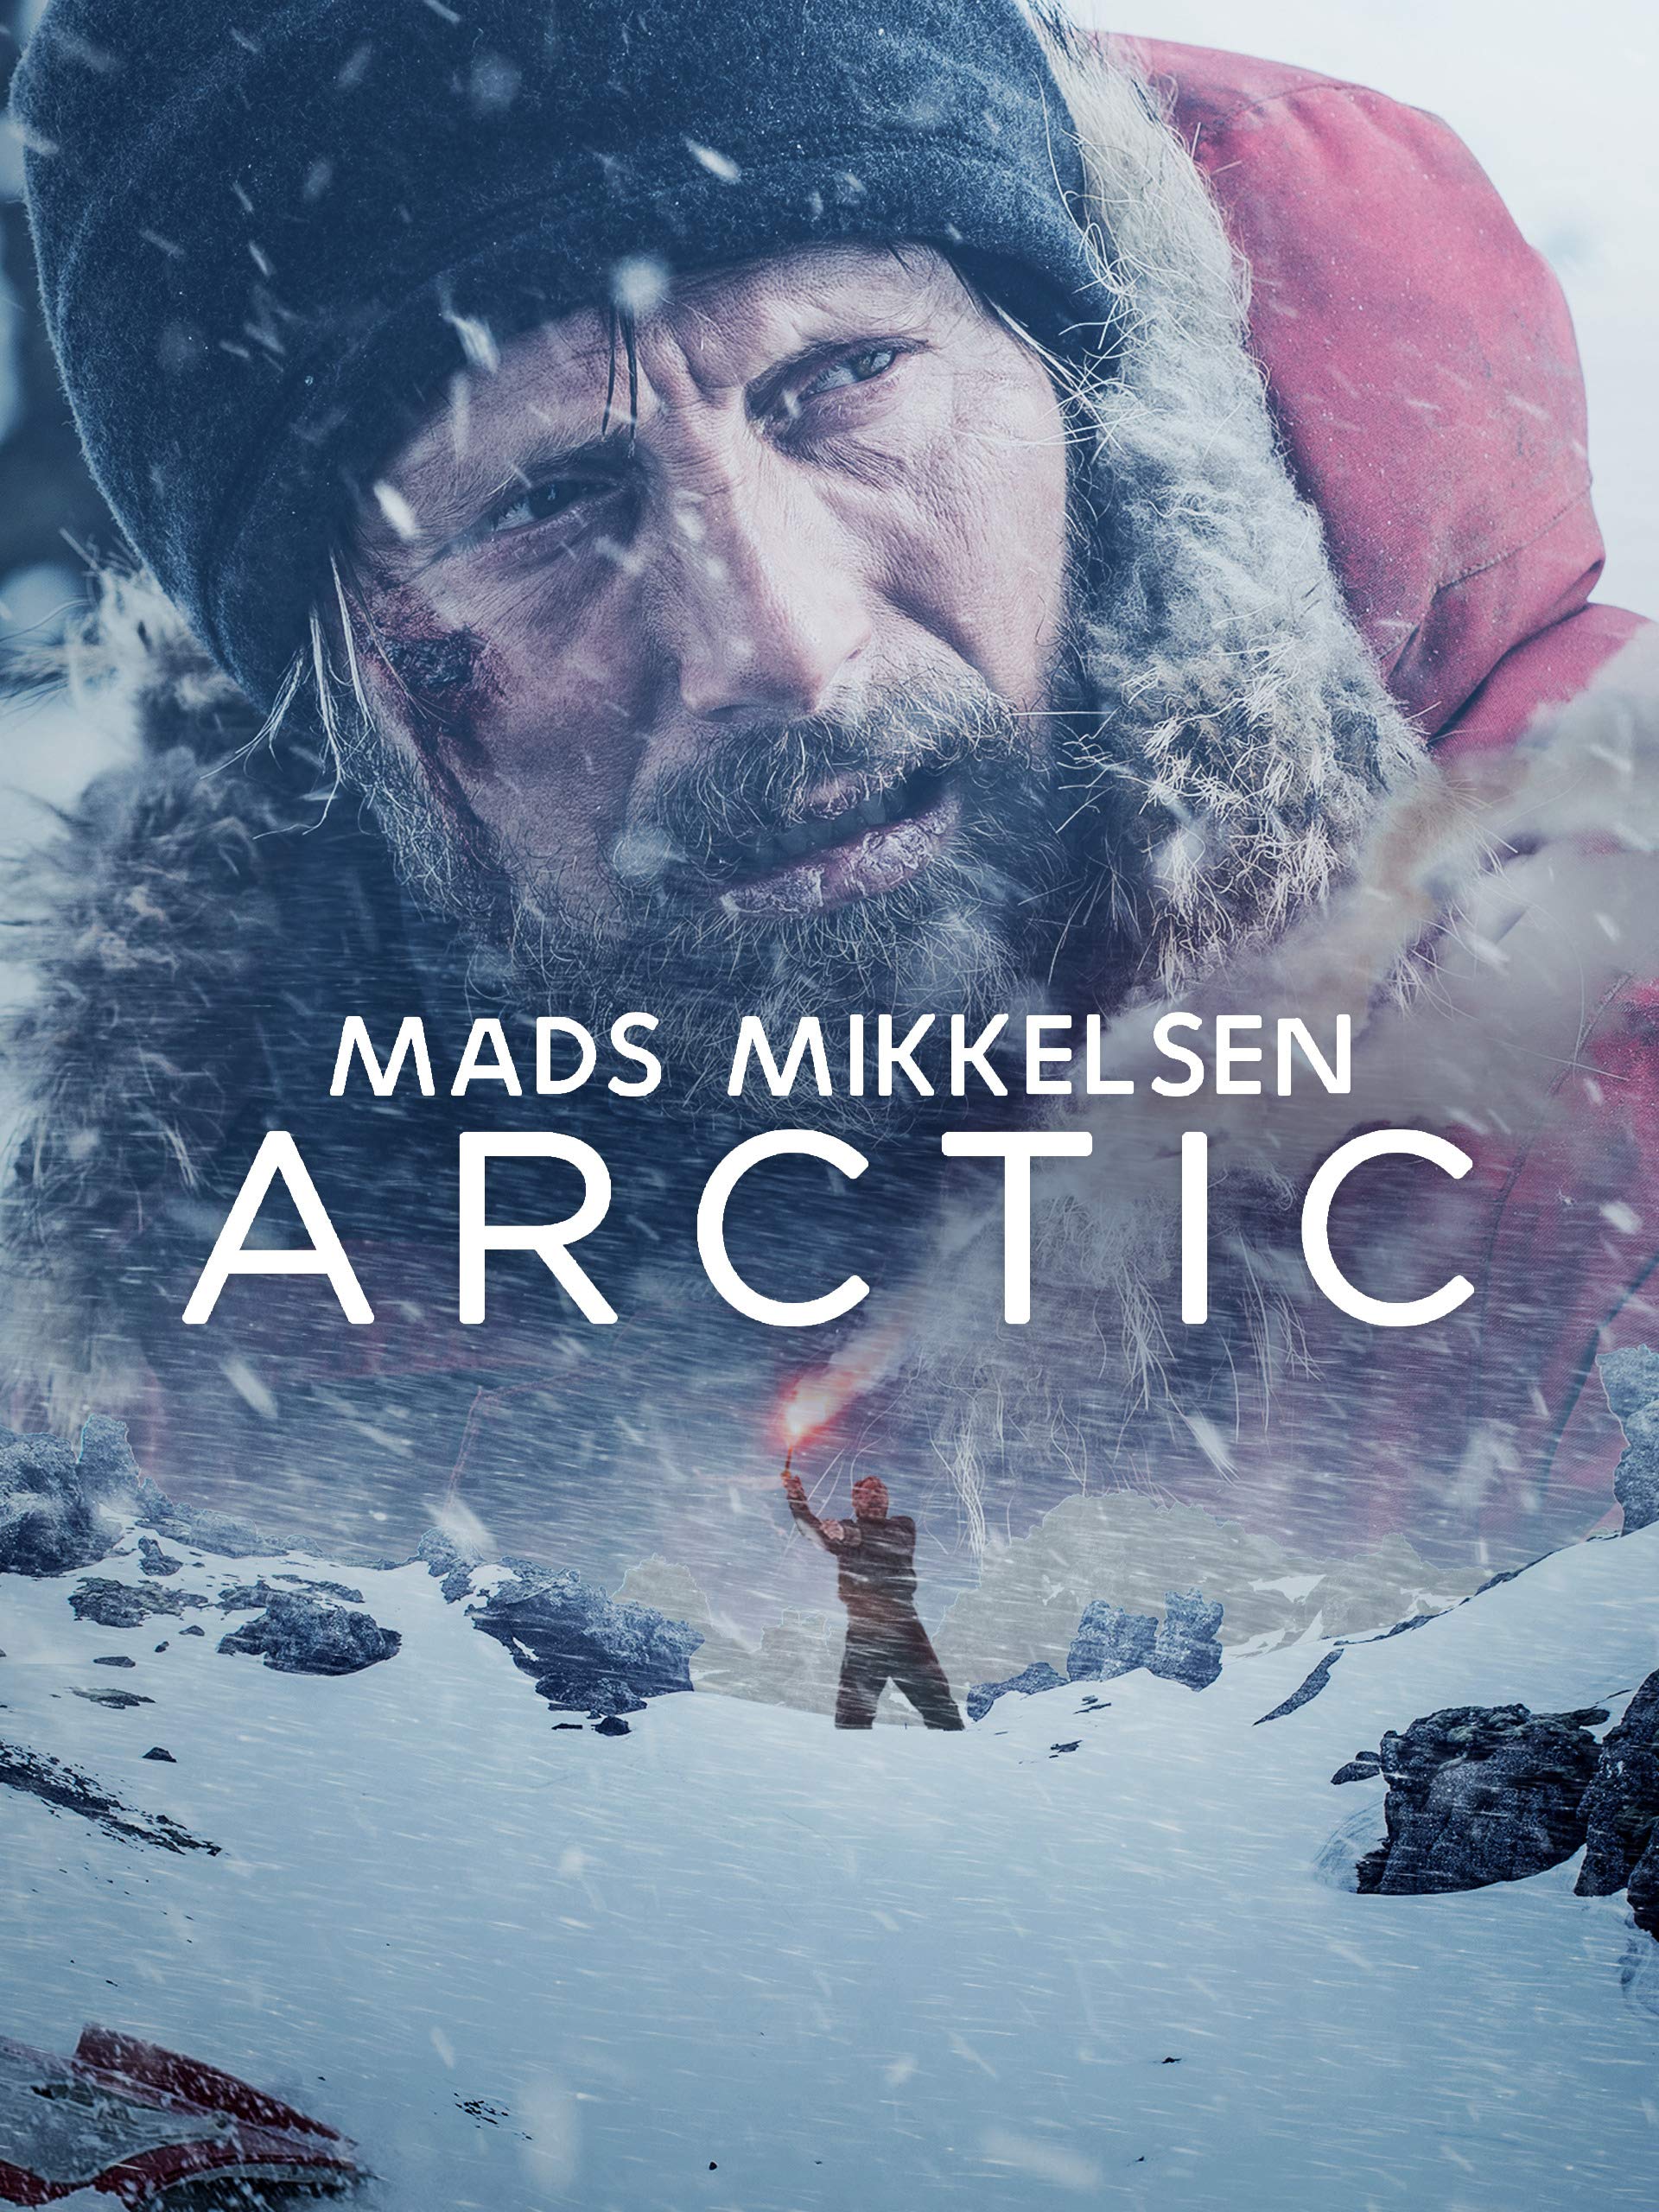 ดูหนังออนไลน์ฟรี Arctic (2018) เกือบตายห่า [อย่าตาย]